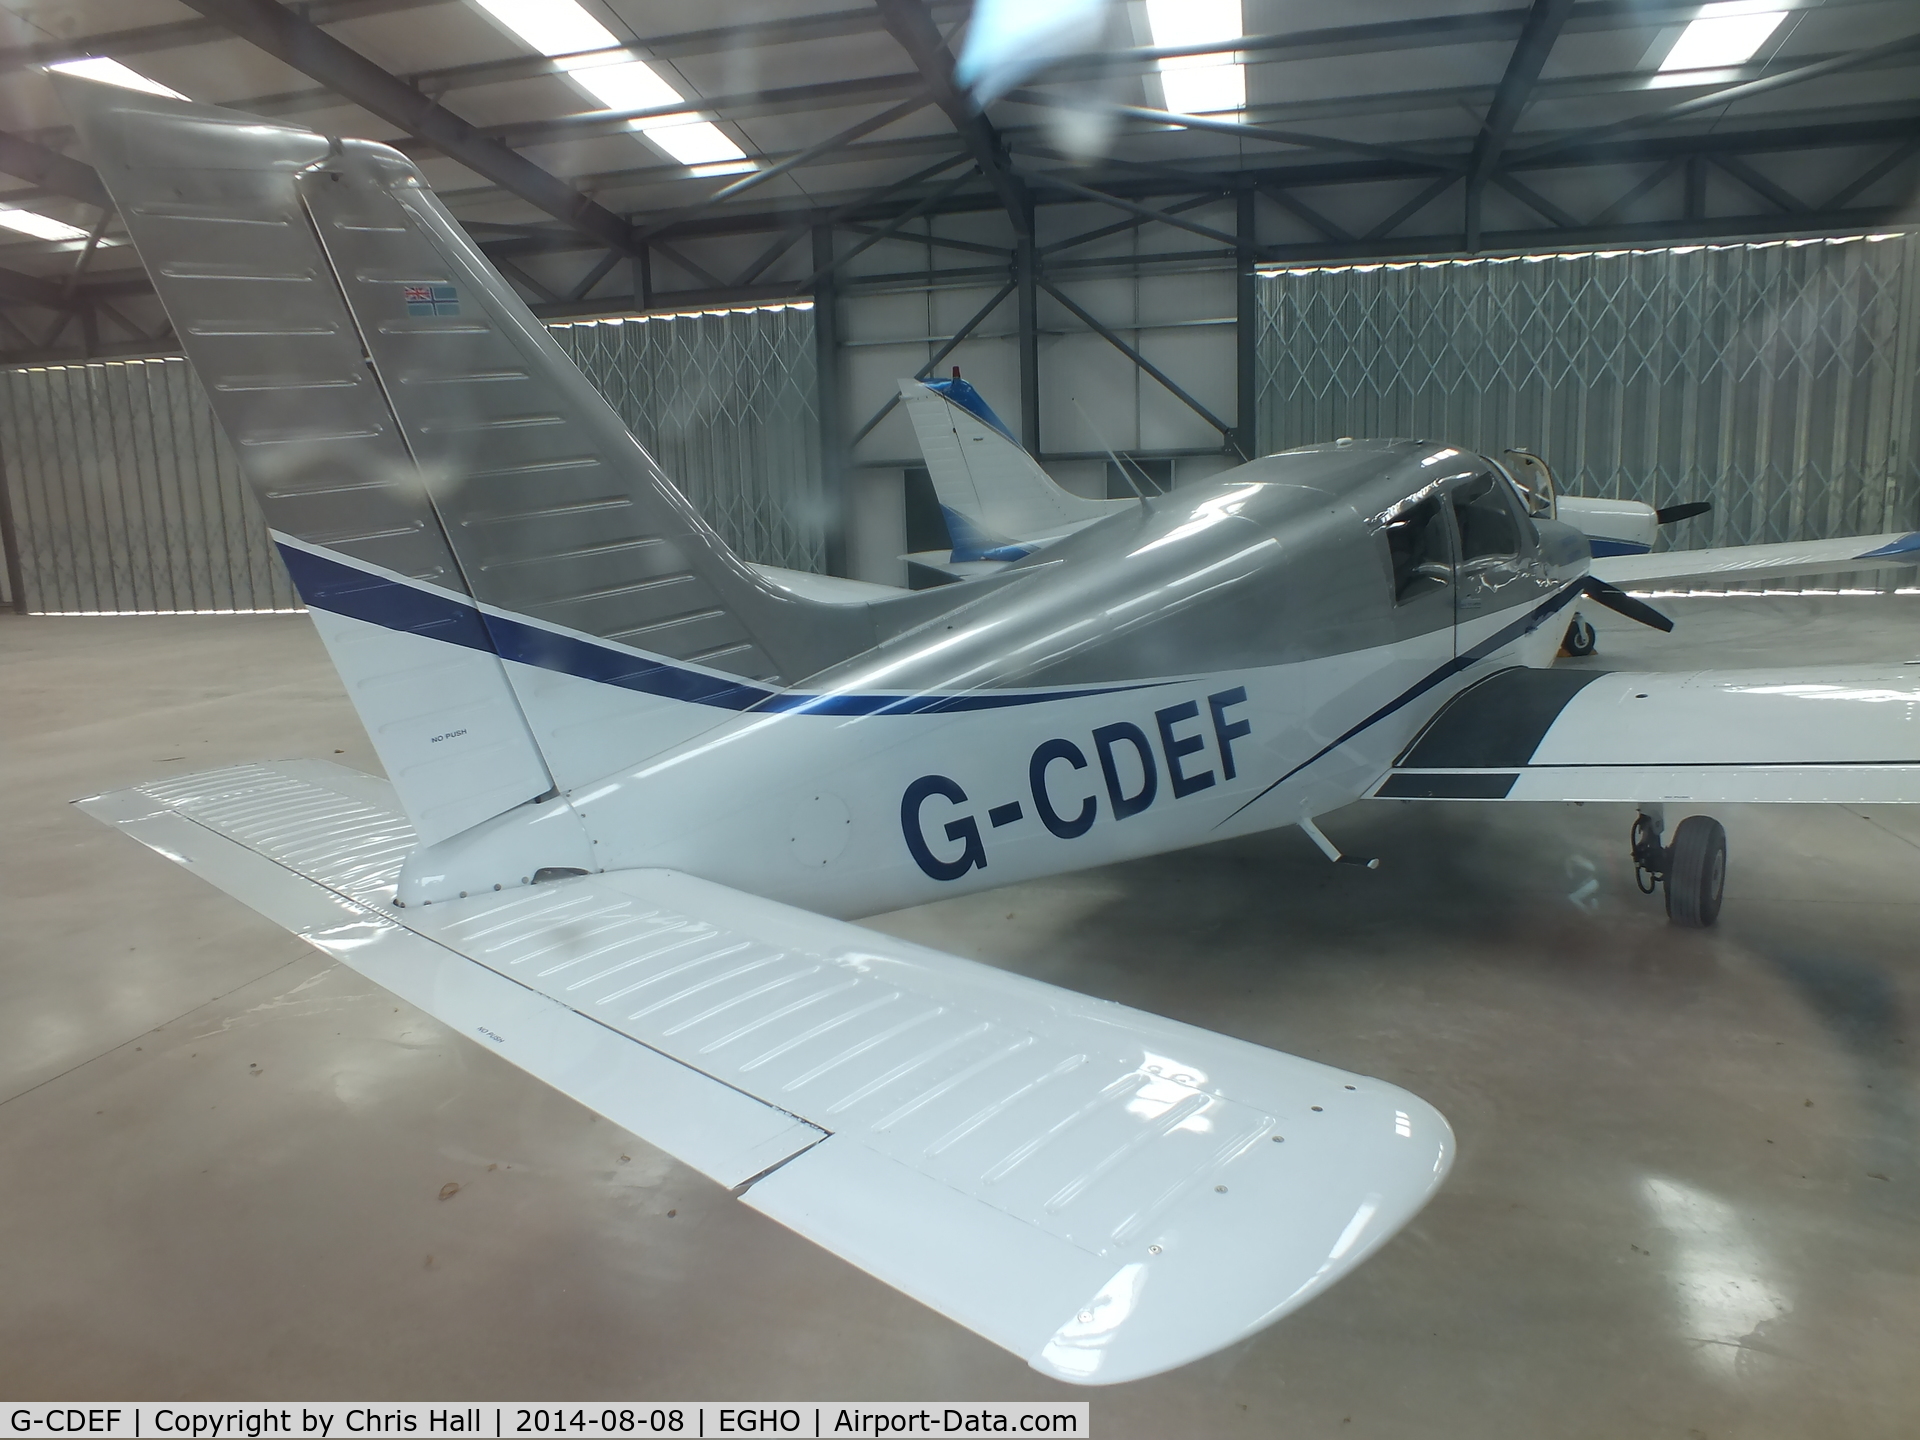 G-CDEF, 1994 Piper PA-28-161 C/N 2841341, at Thruxton Aerodrome